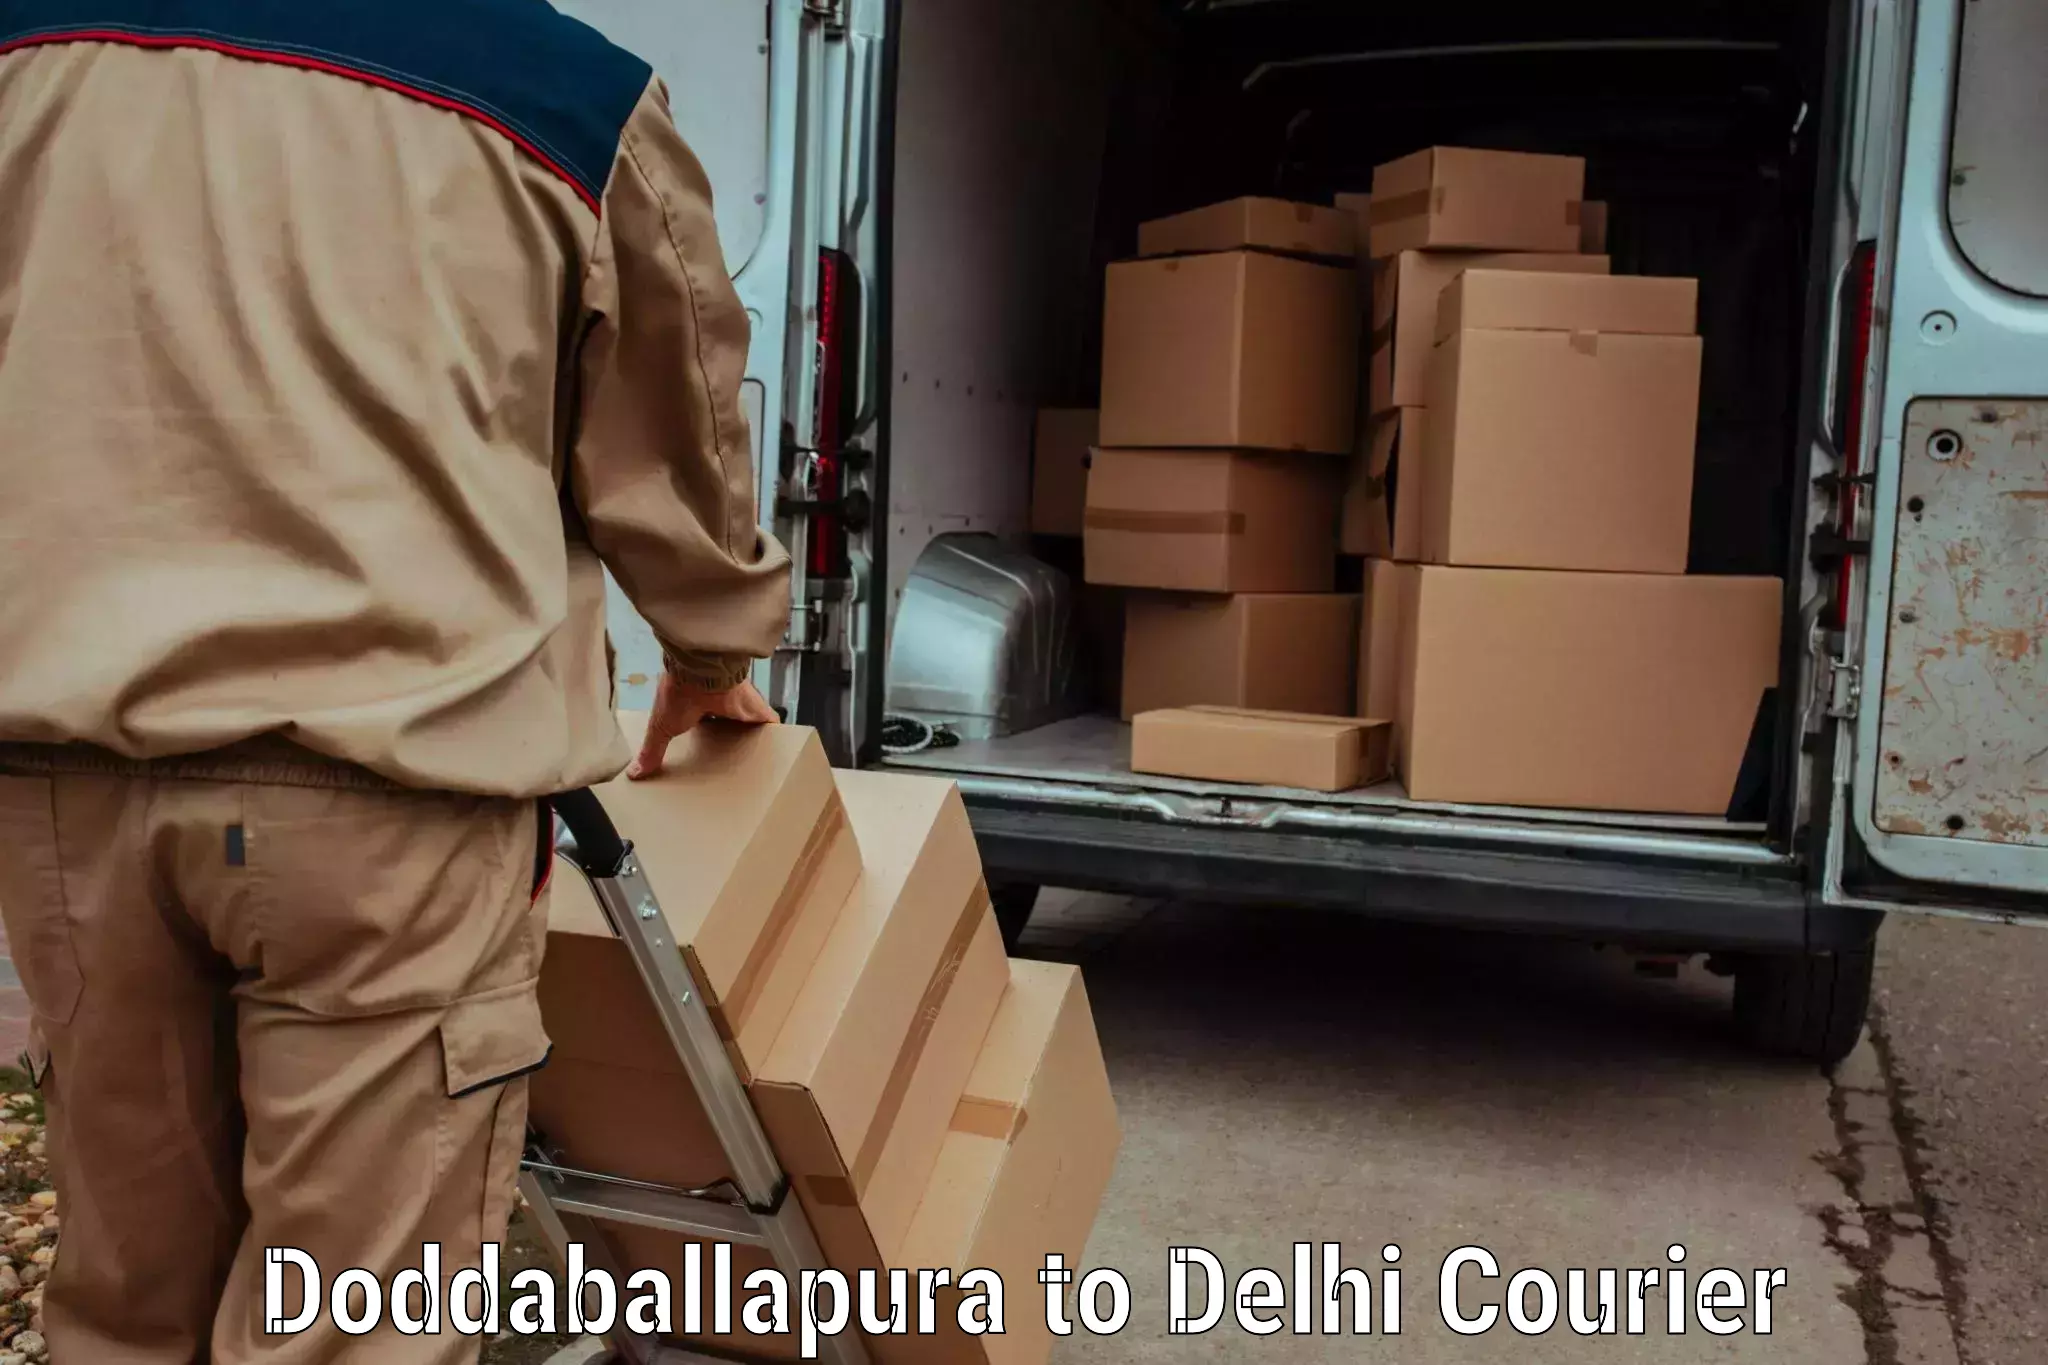 Global shipping networks Doddaballapura to Ramesh Nagar